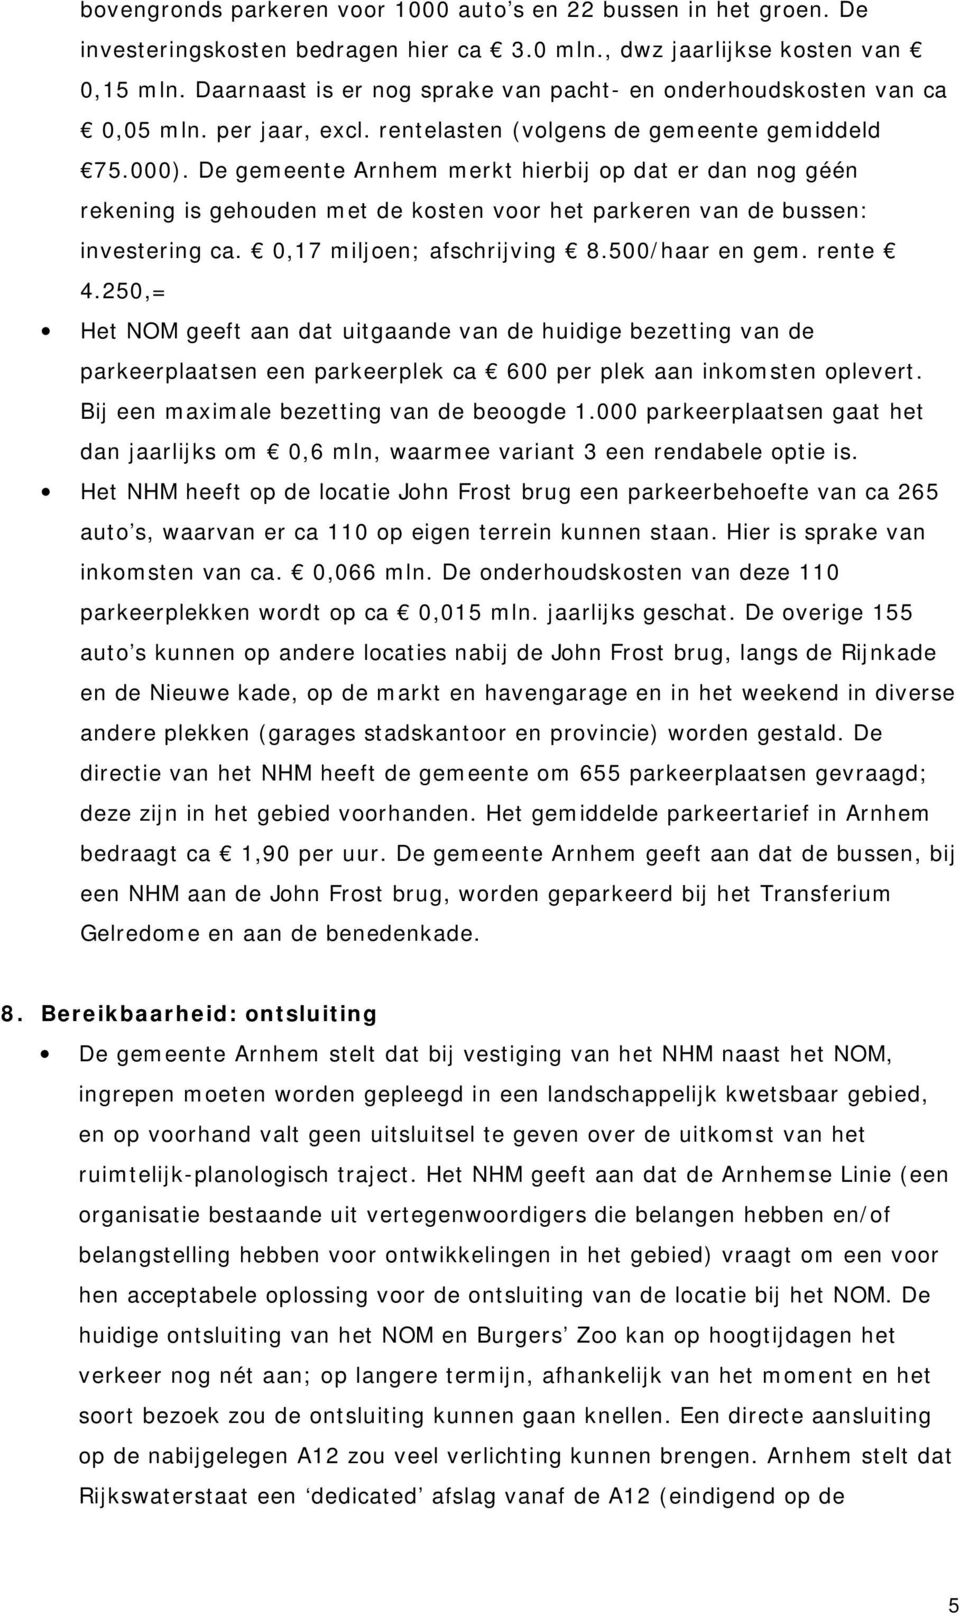 De gemeente Arnhem merkt hierbij op dat er dan nog géén rekening is gehouden met de kosten voor het parkeren van de bussen: investering ca. 0,17 miljoen; afschrijving 8.500/haar en gem. rente 4.